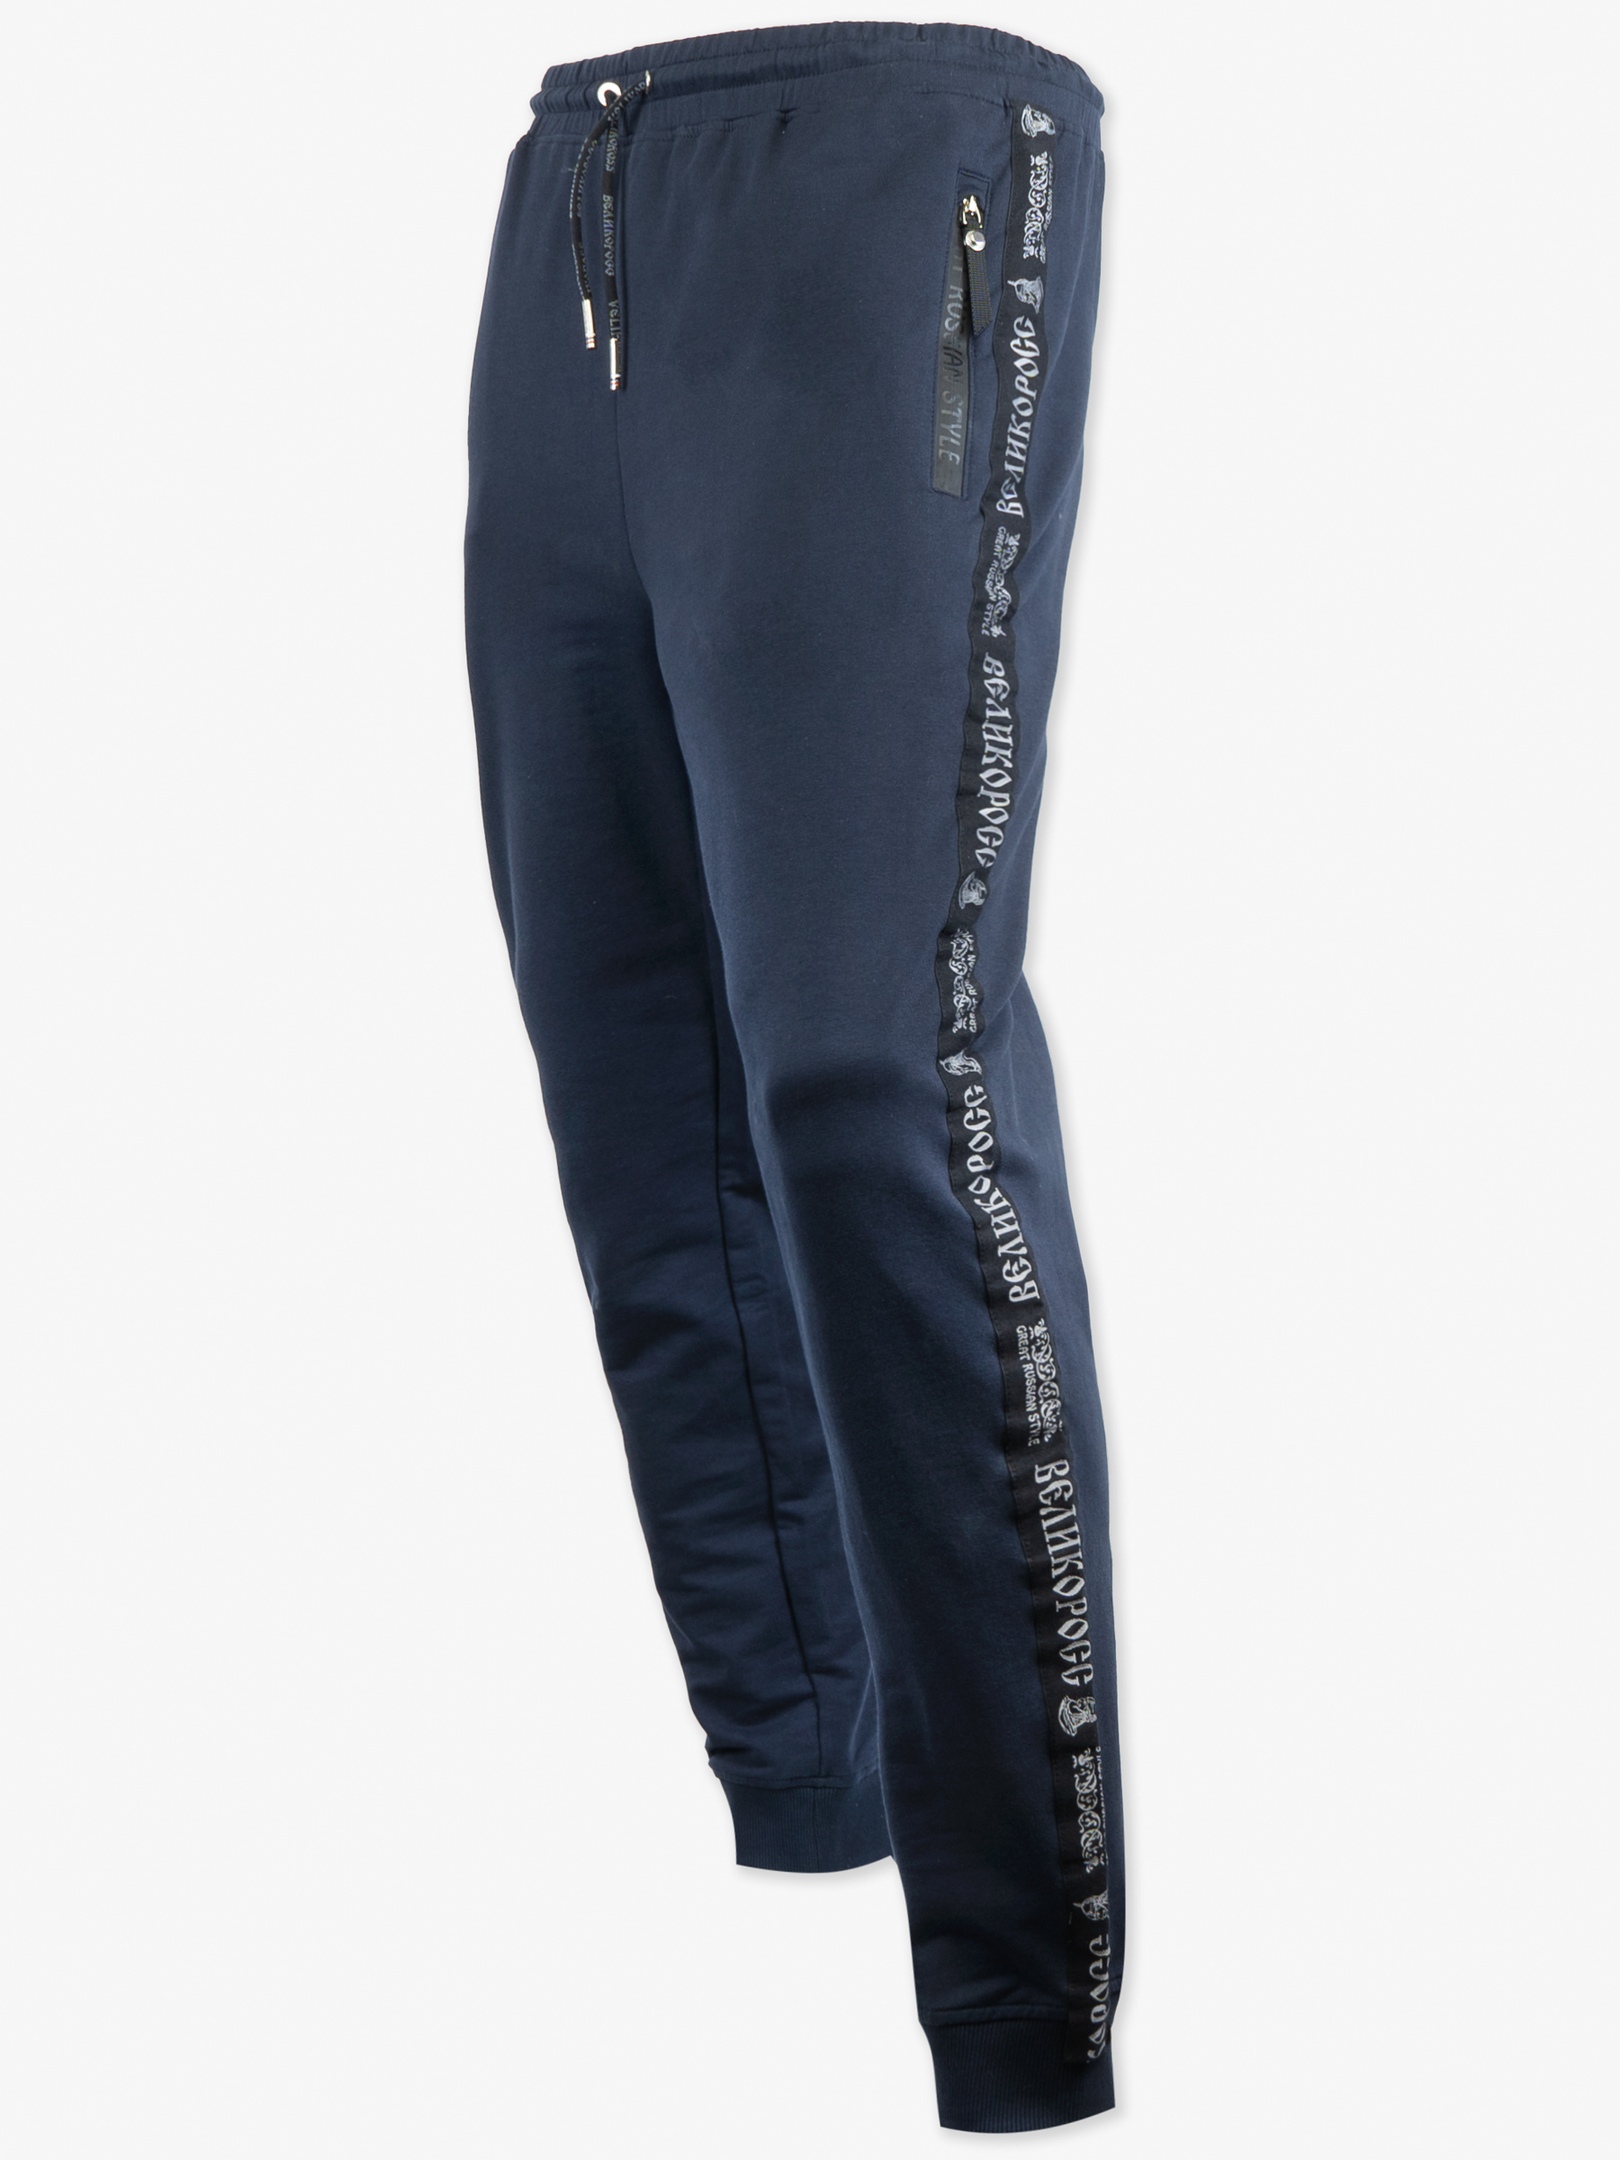 Спортивные брюки мужские Великоросс 9 синие 56 RU